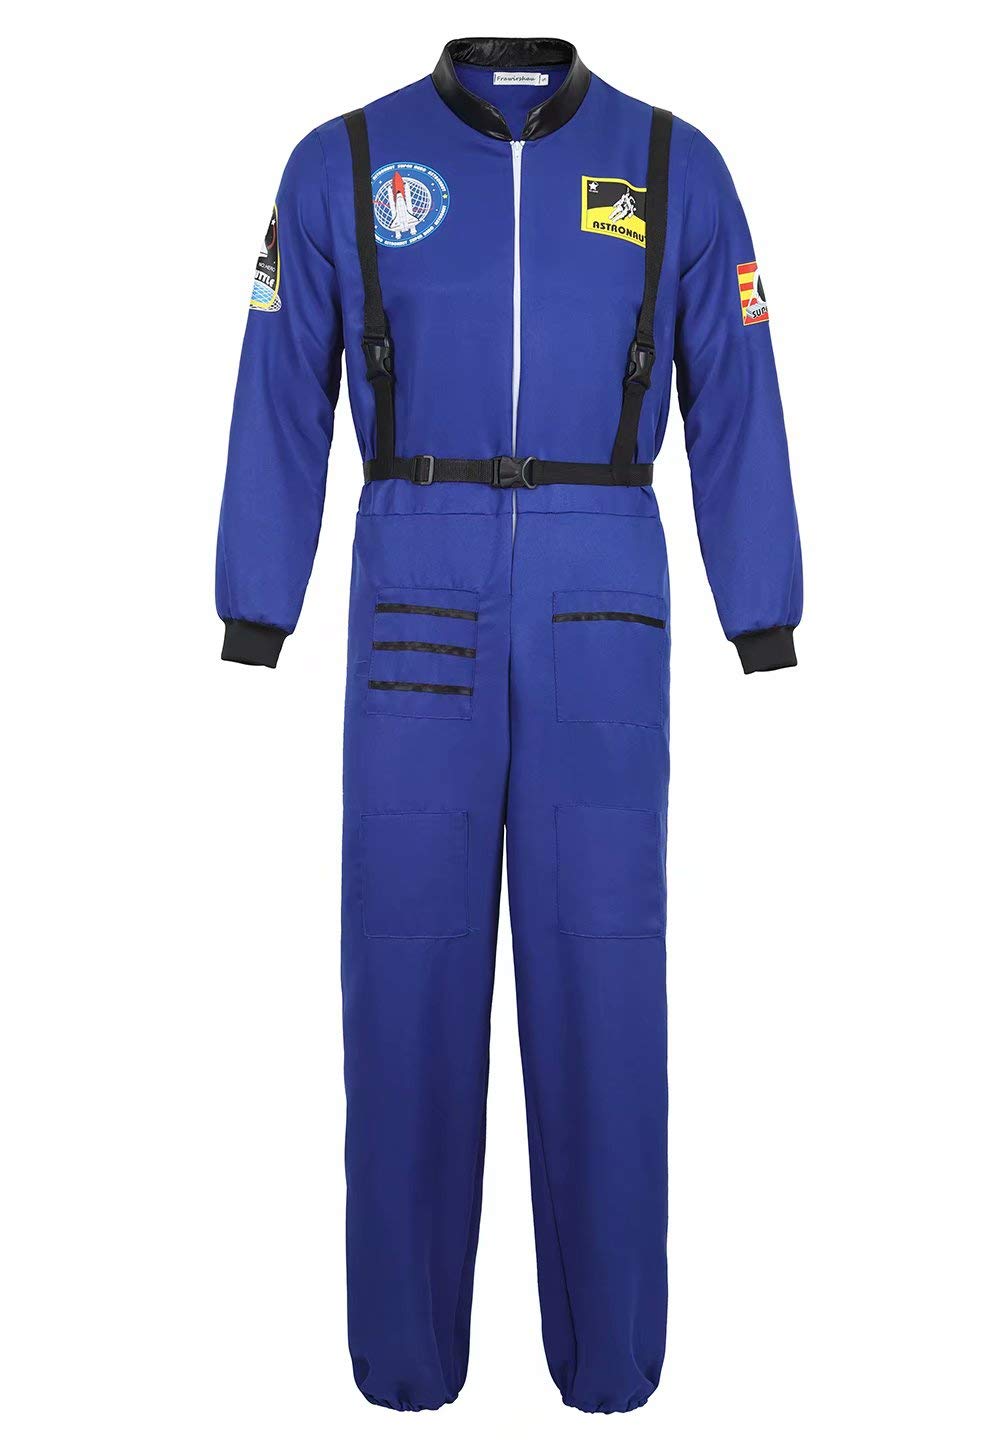 Josamogre Astronauten Kostüm Erwachsene Herren Kostüm Astronau Anzugt Weltraum Raumfahrer Halloween Cosplay Blau 3XL